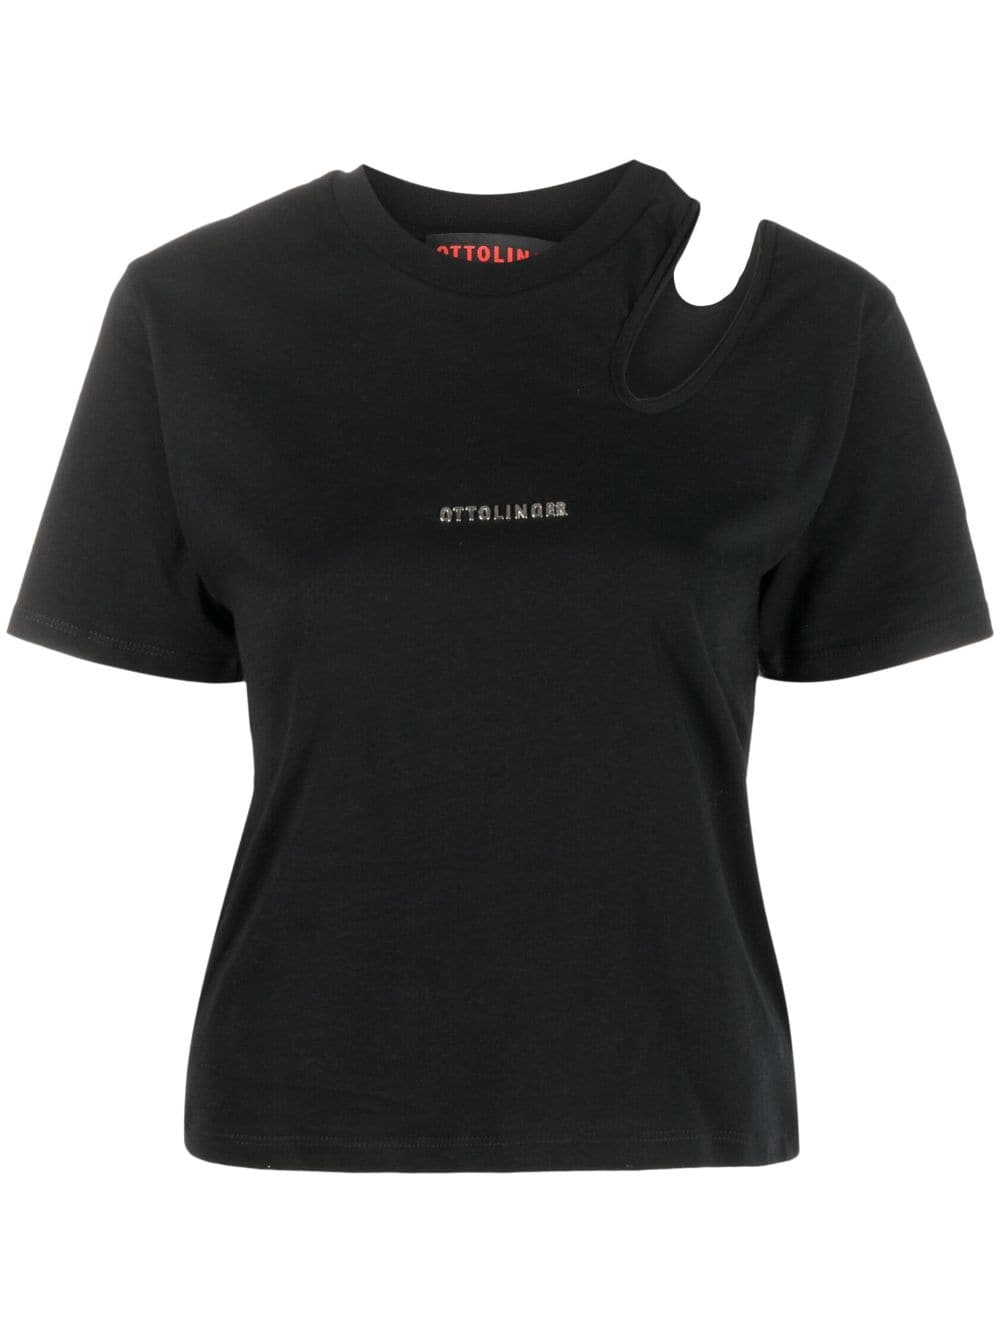 ottolinger t-shirt en coton biologique à découpes - noir